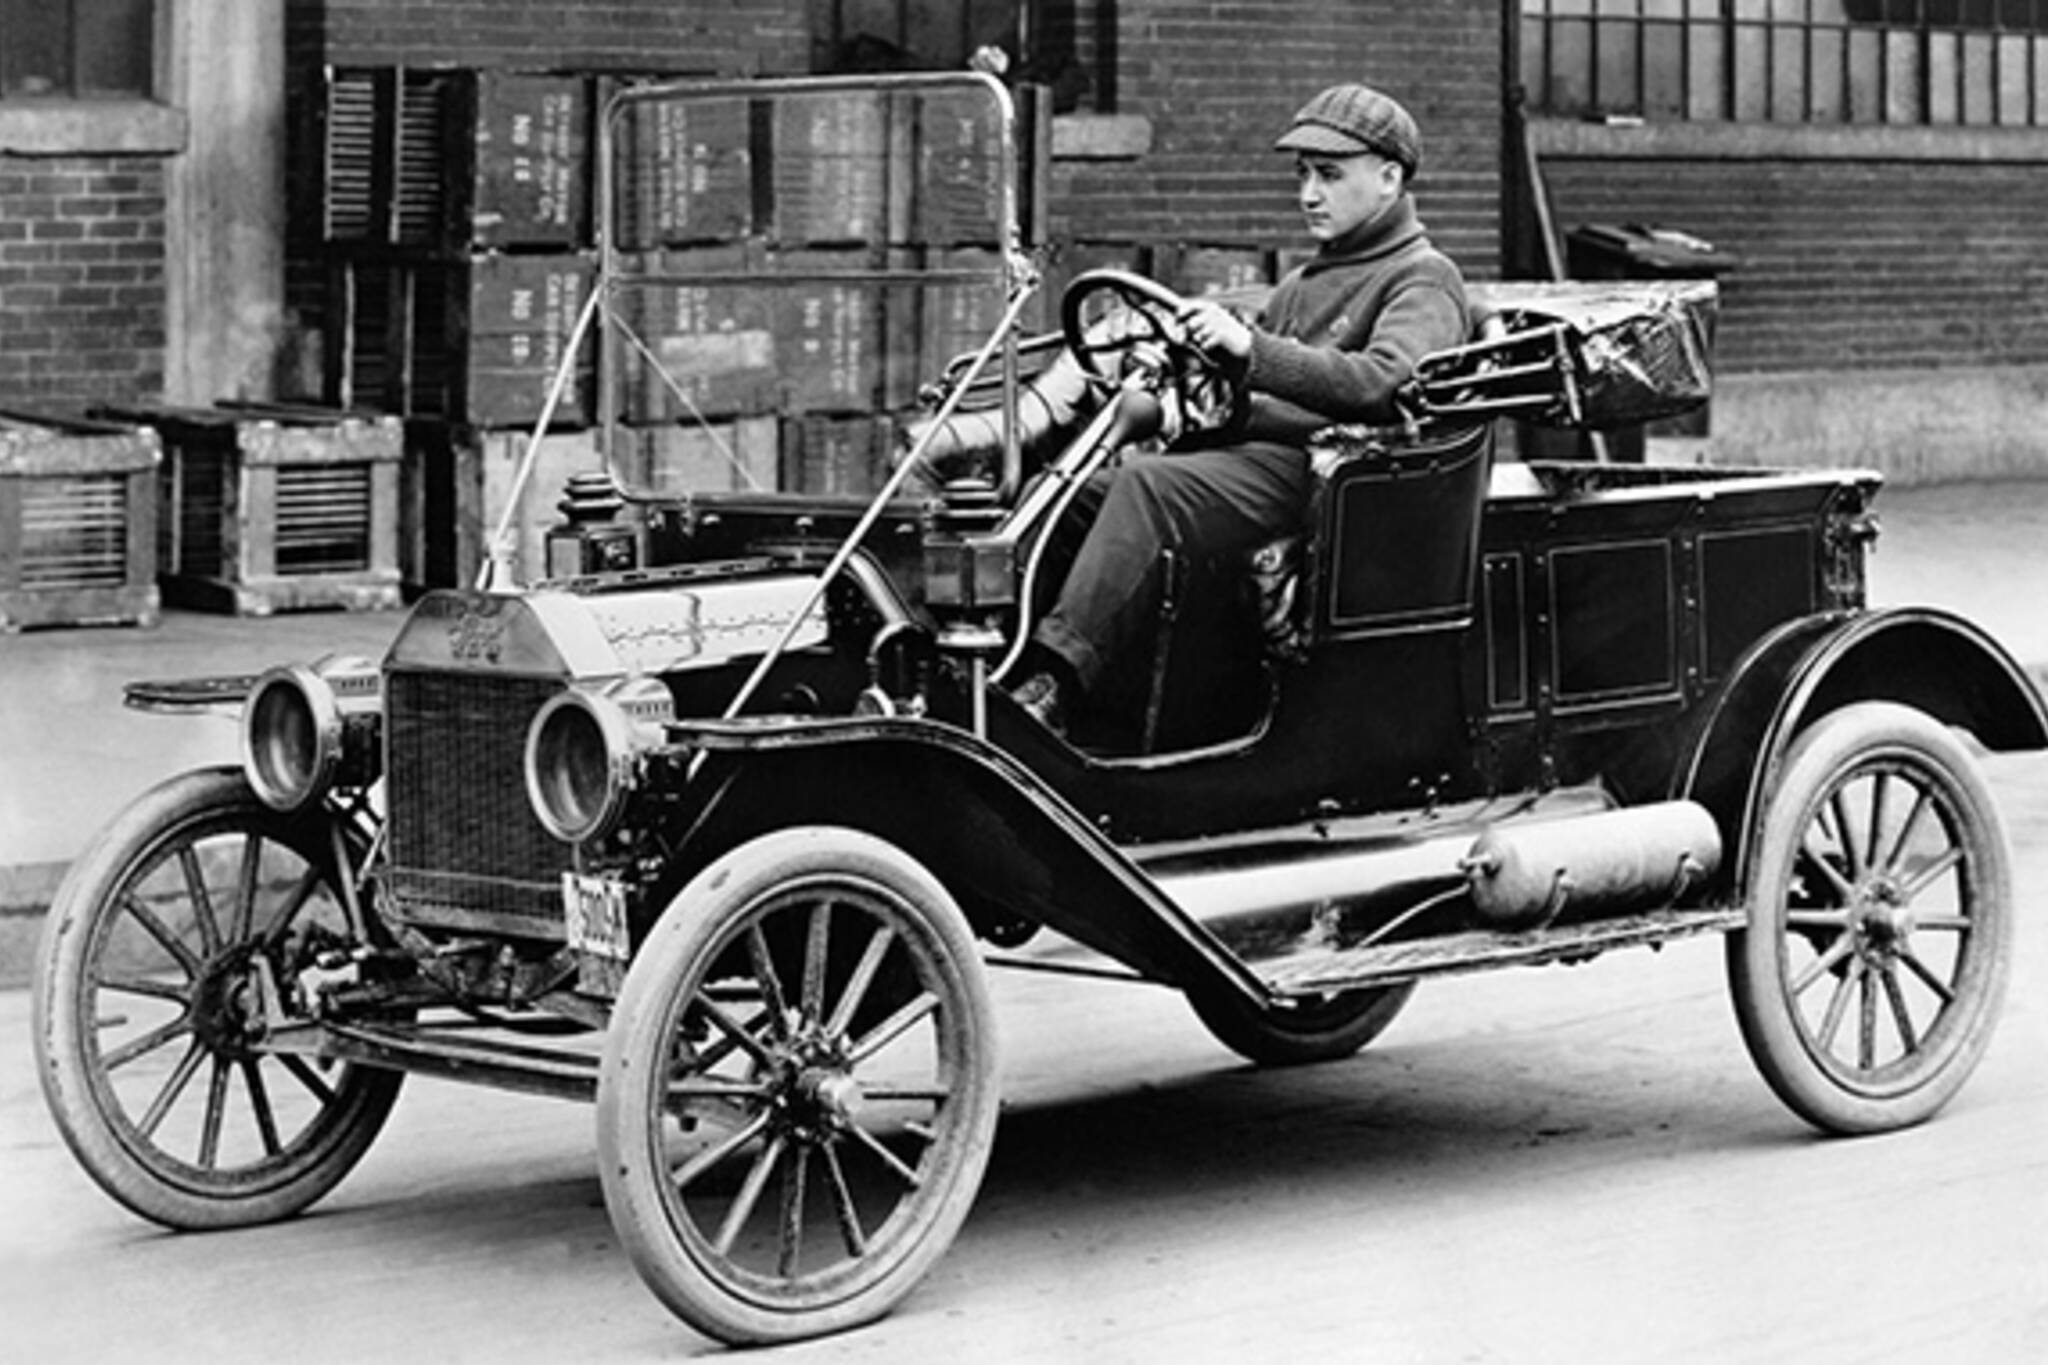 Первый автомобиль в истории. Ford model t 1927. Ford model t 1908 и 1927.